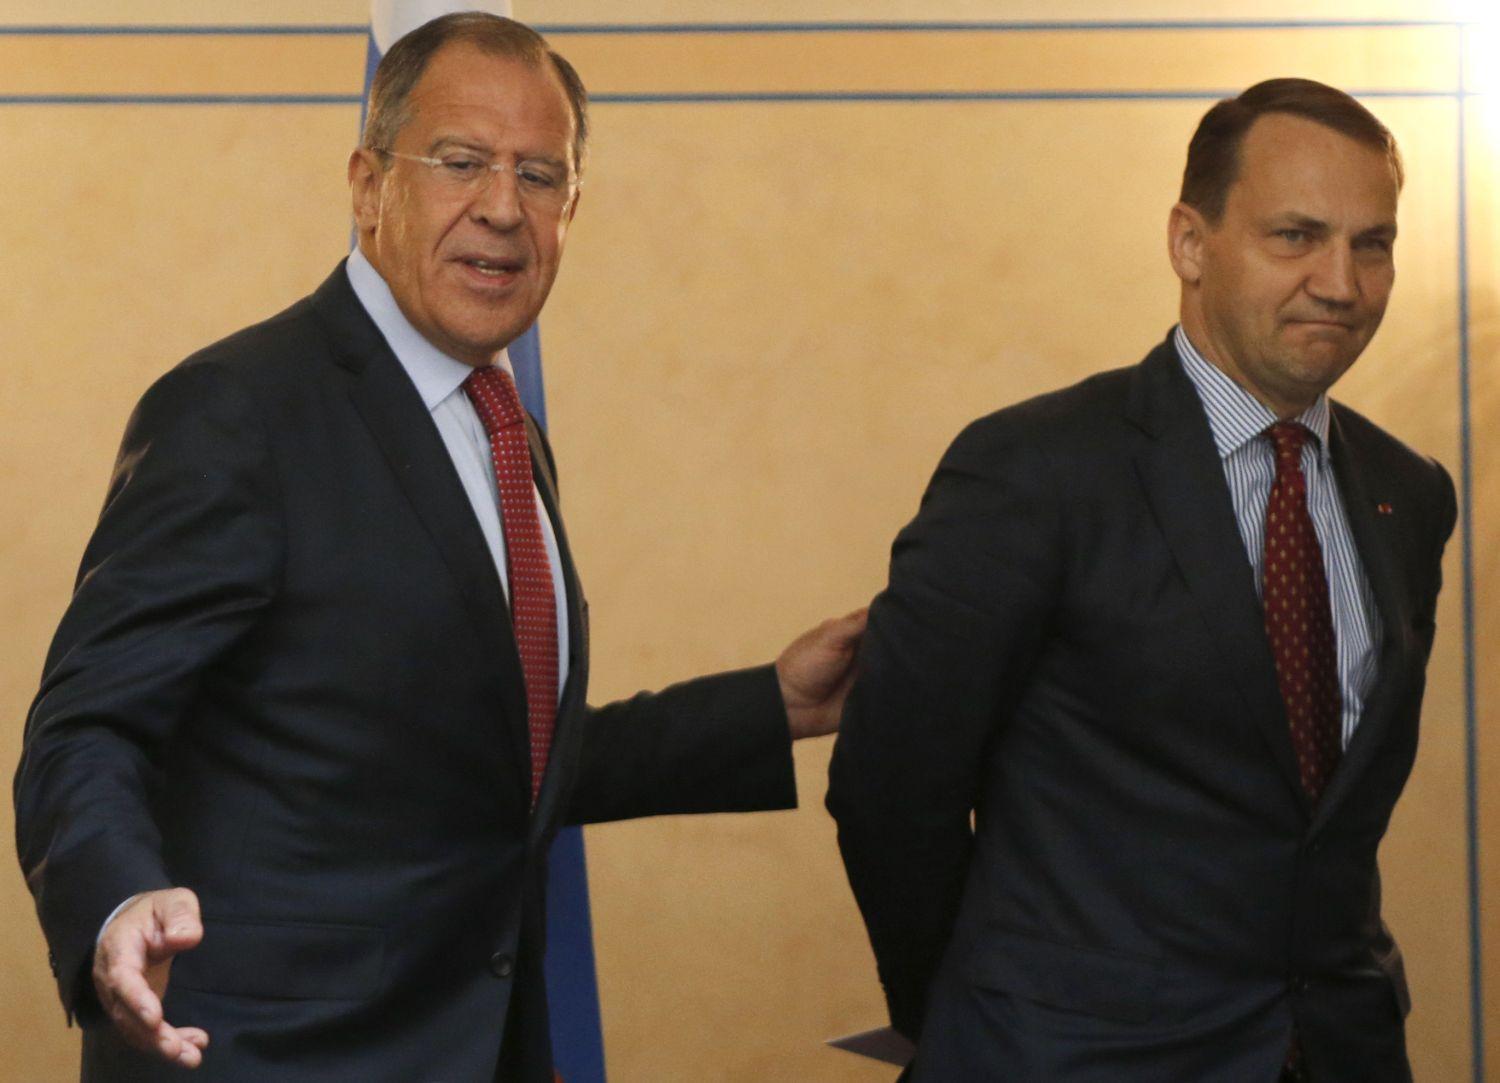 Sikorski még külügyminiszterként (elöl) júniusban  Szergej Lavrovval, az orosz diplomácia vezetőjével. A nyakkendő még hasonlít, a mentalitás már nem. Akkor sem, ha Sikorski egy kicsit túllihegte magát